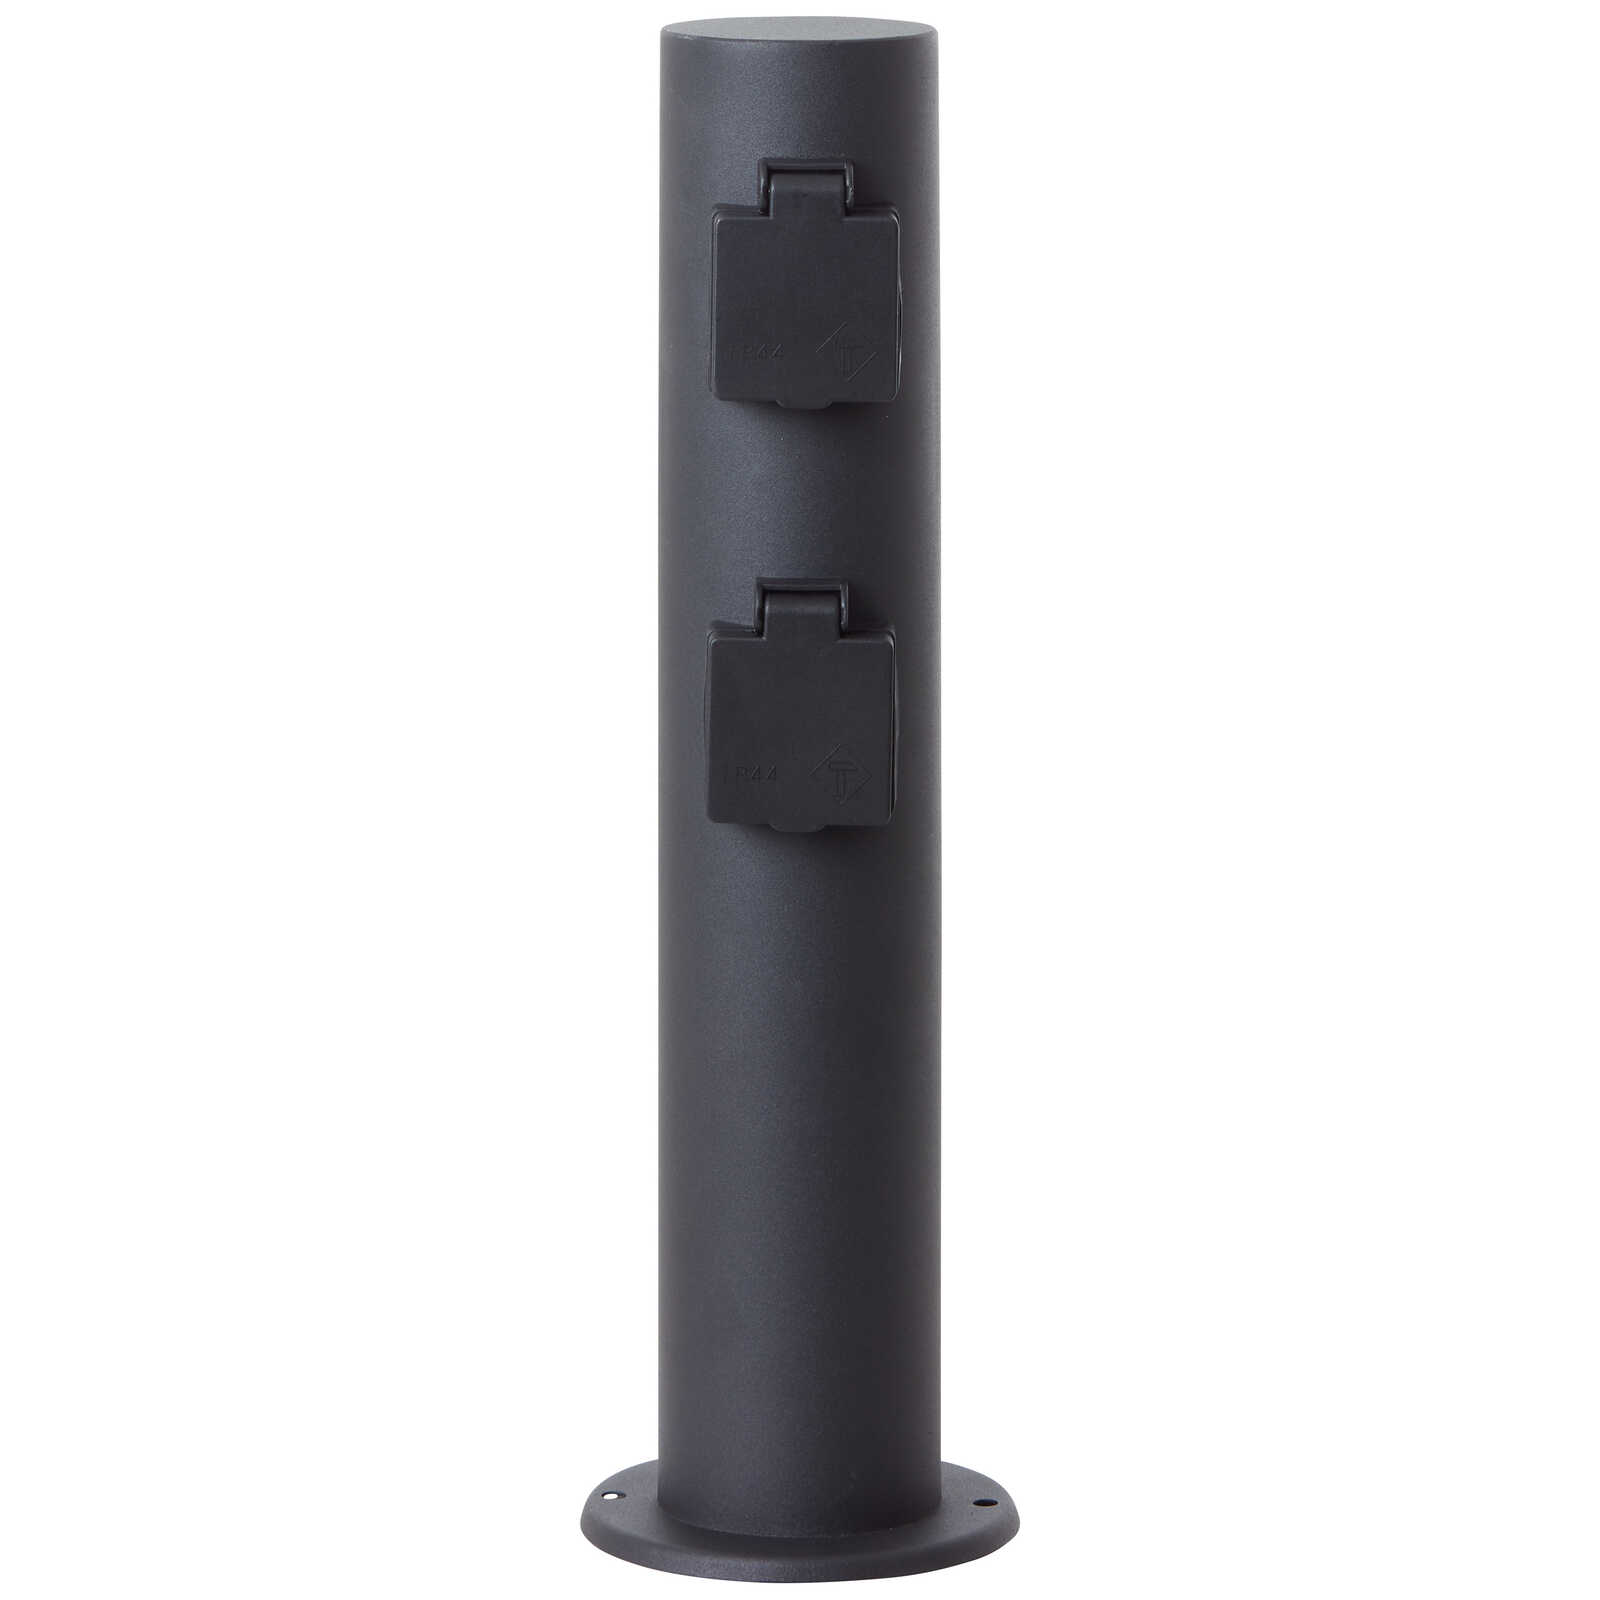             Metal outdoor socket base - Fenja 2 - Black
        